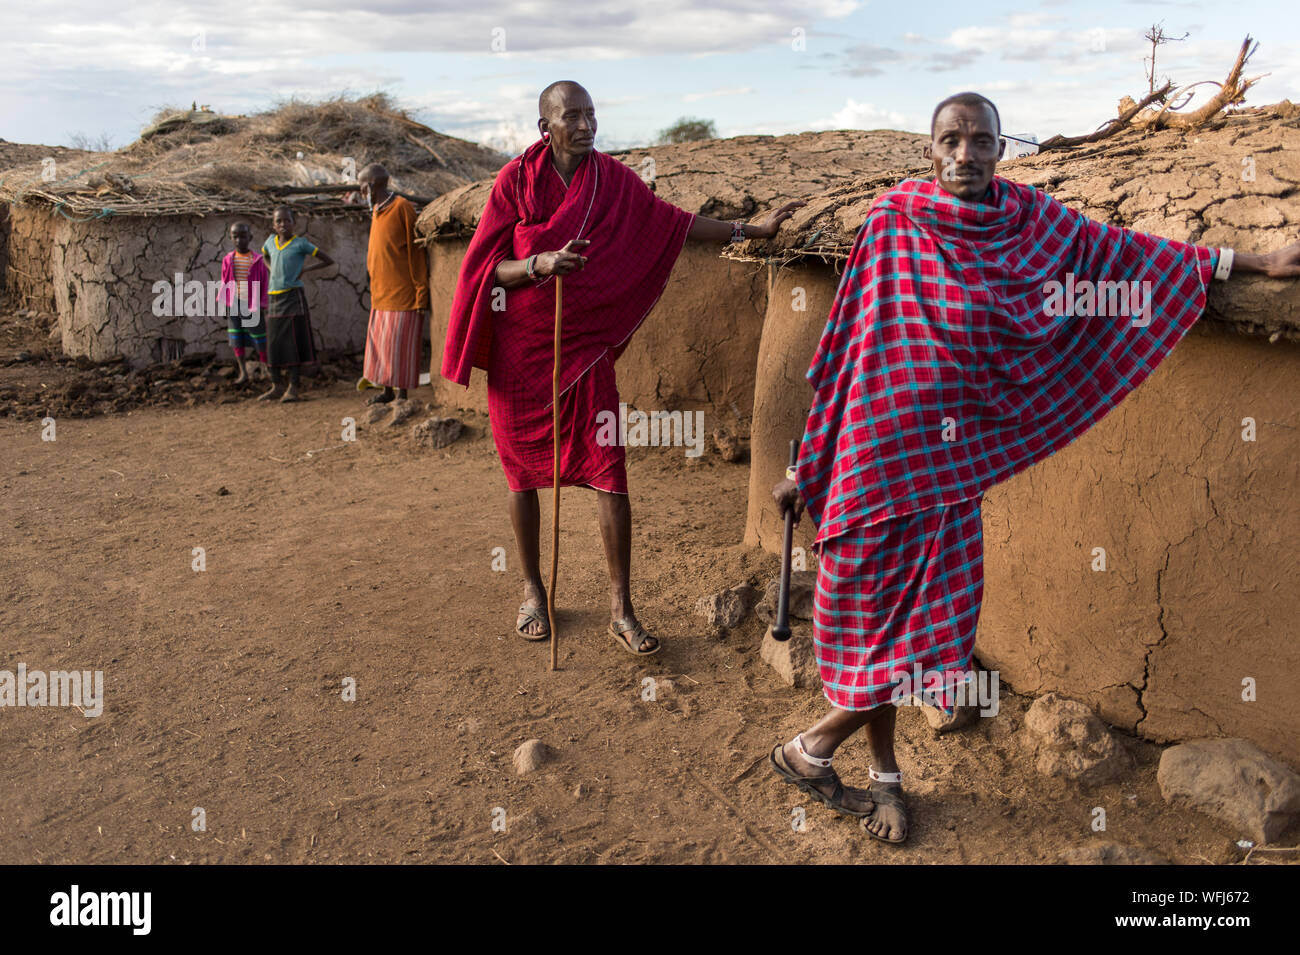 Masai Tribe people, Amboseli National Park, Kenya Stock Photo